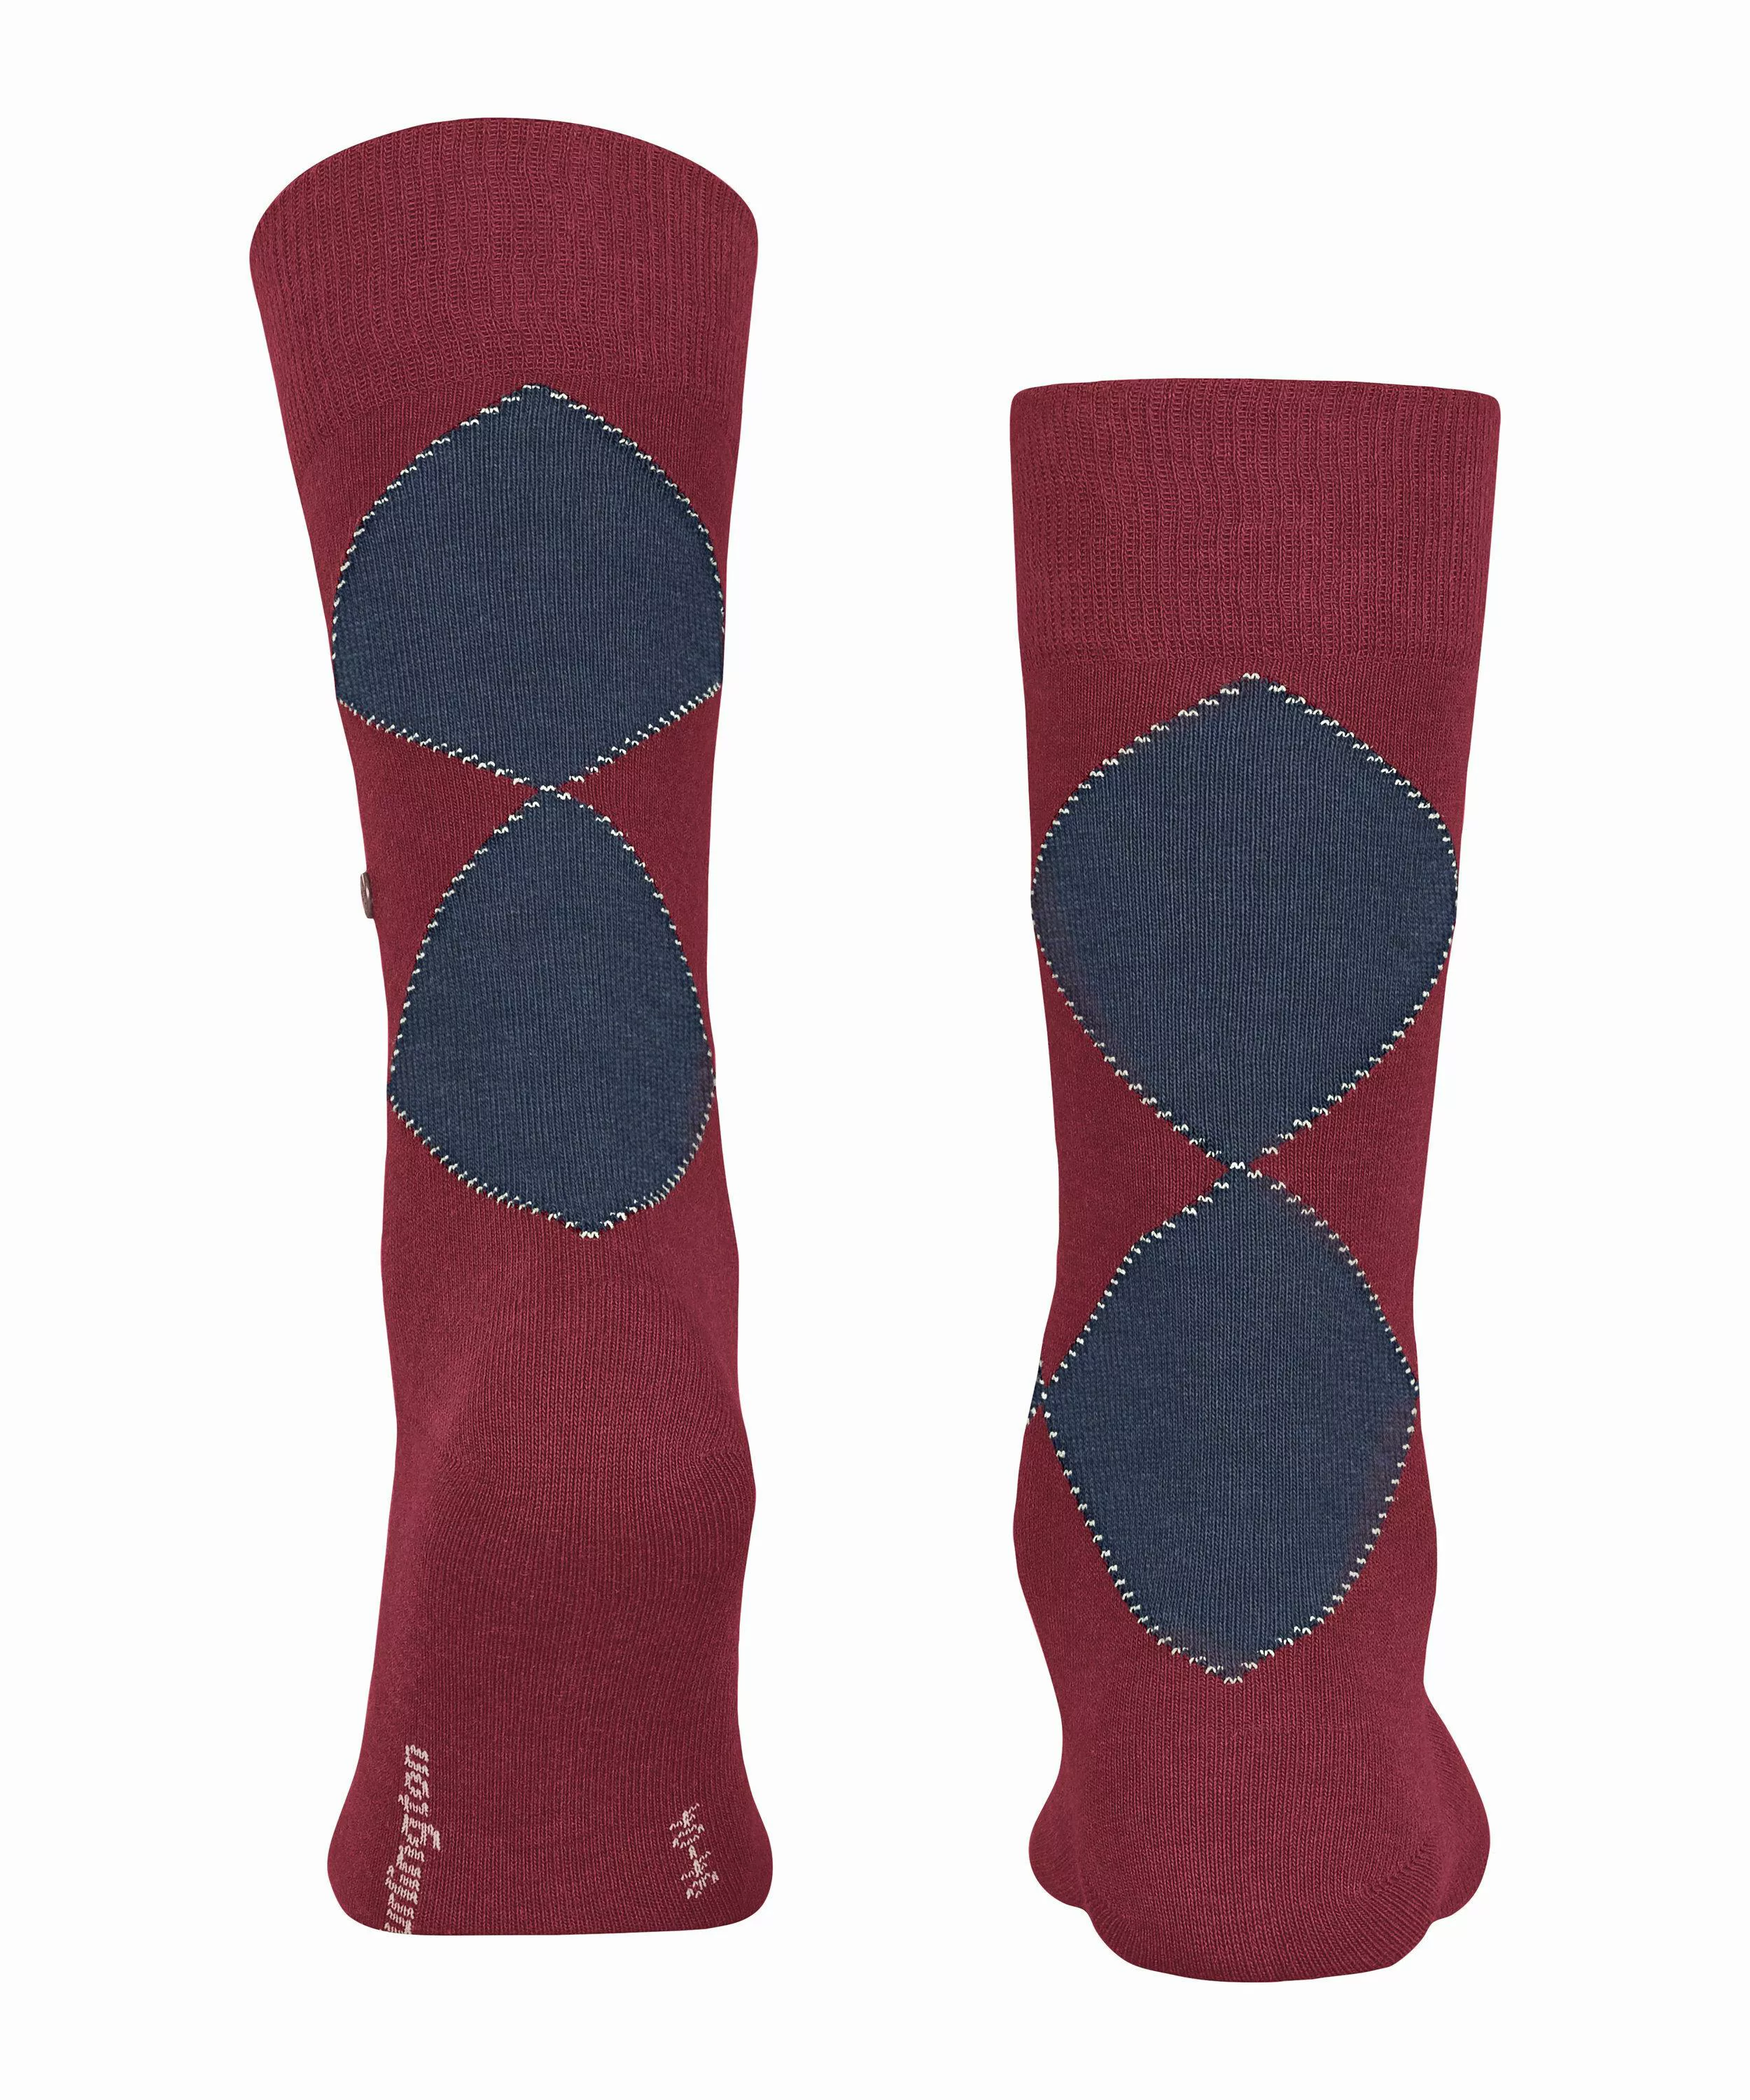 Burlington Kingston Herren Socken, 40-46, Rot, Argyle, Baumwolle (Bio), 210 günstig online kaufen